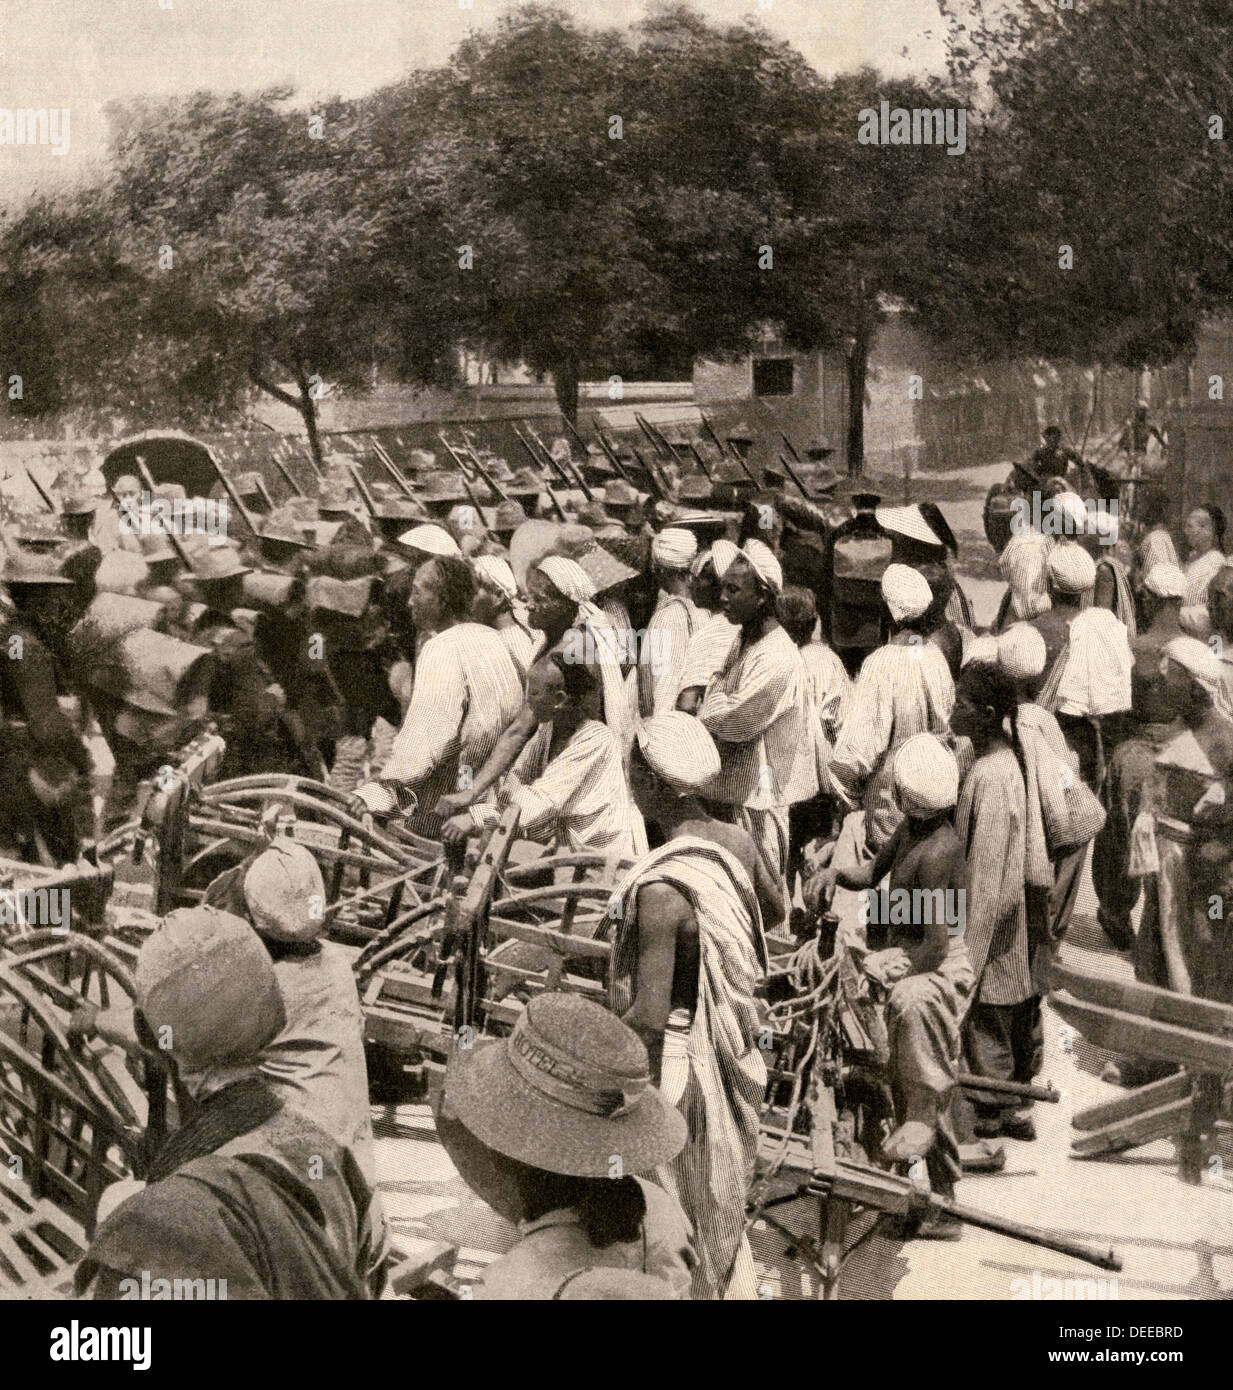 Amerikanischen Marines in Peking, China, während der Boxer Rebellion, 1900. Halbton Wiedergabe einer Fotografie Stockfoto